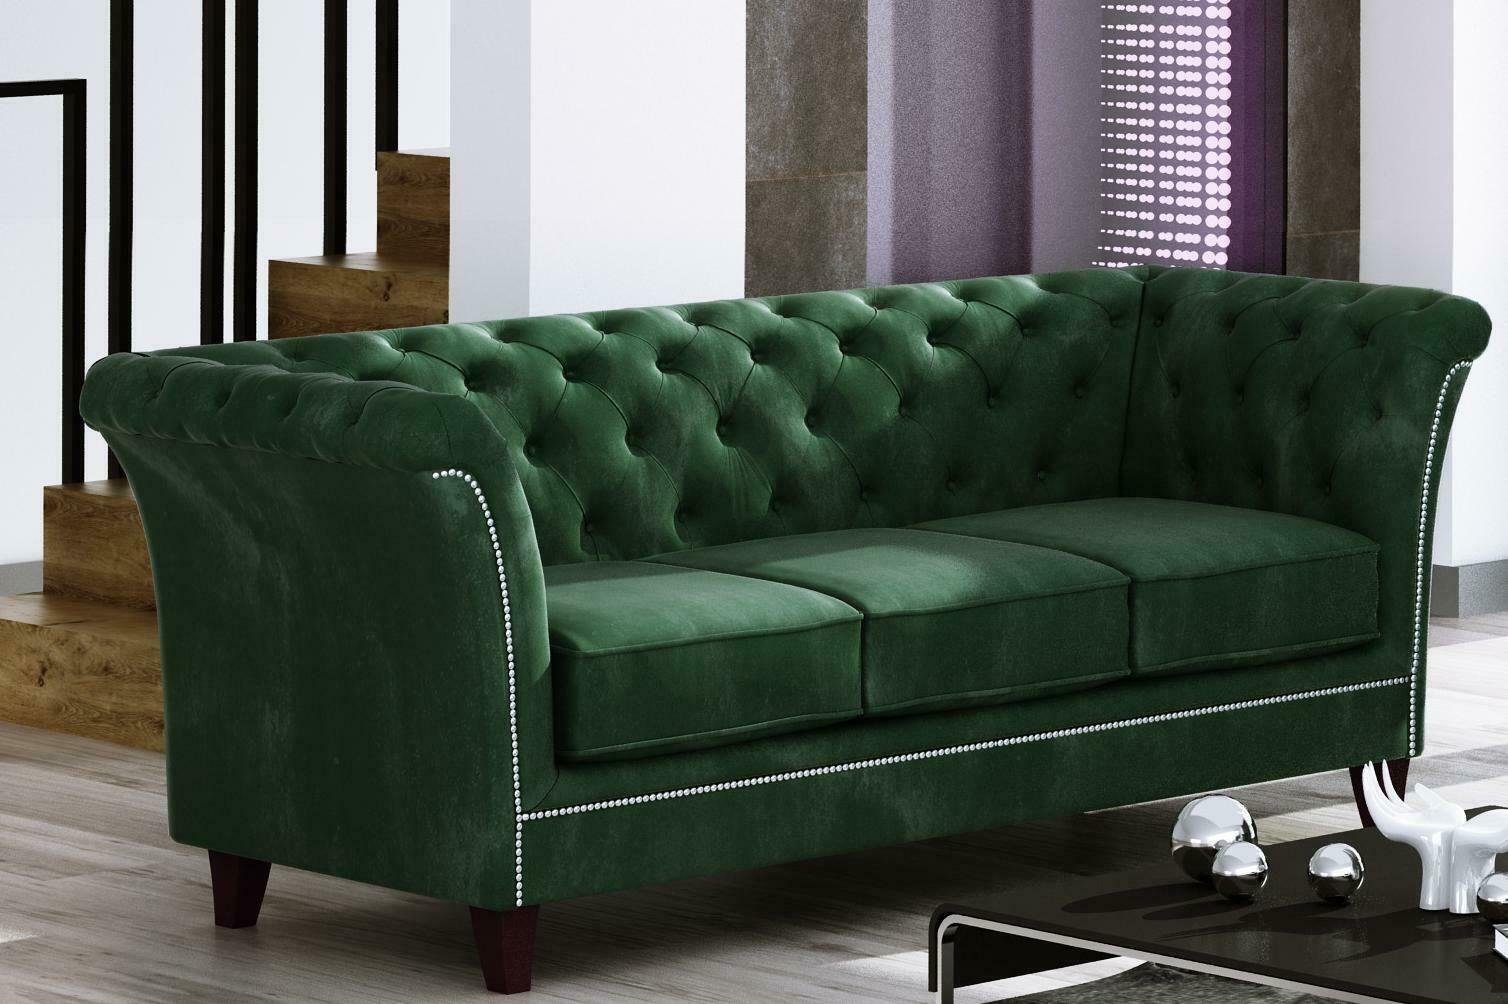 JVmoebel Sofa Grüner Dreisitzer Chesterfield Made Edel Neu, Möbel 3-Sitzer Grau Europe Luxus in Couch